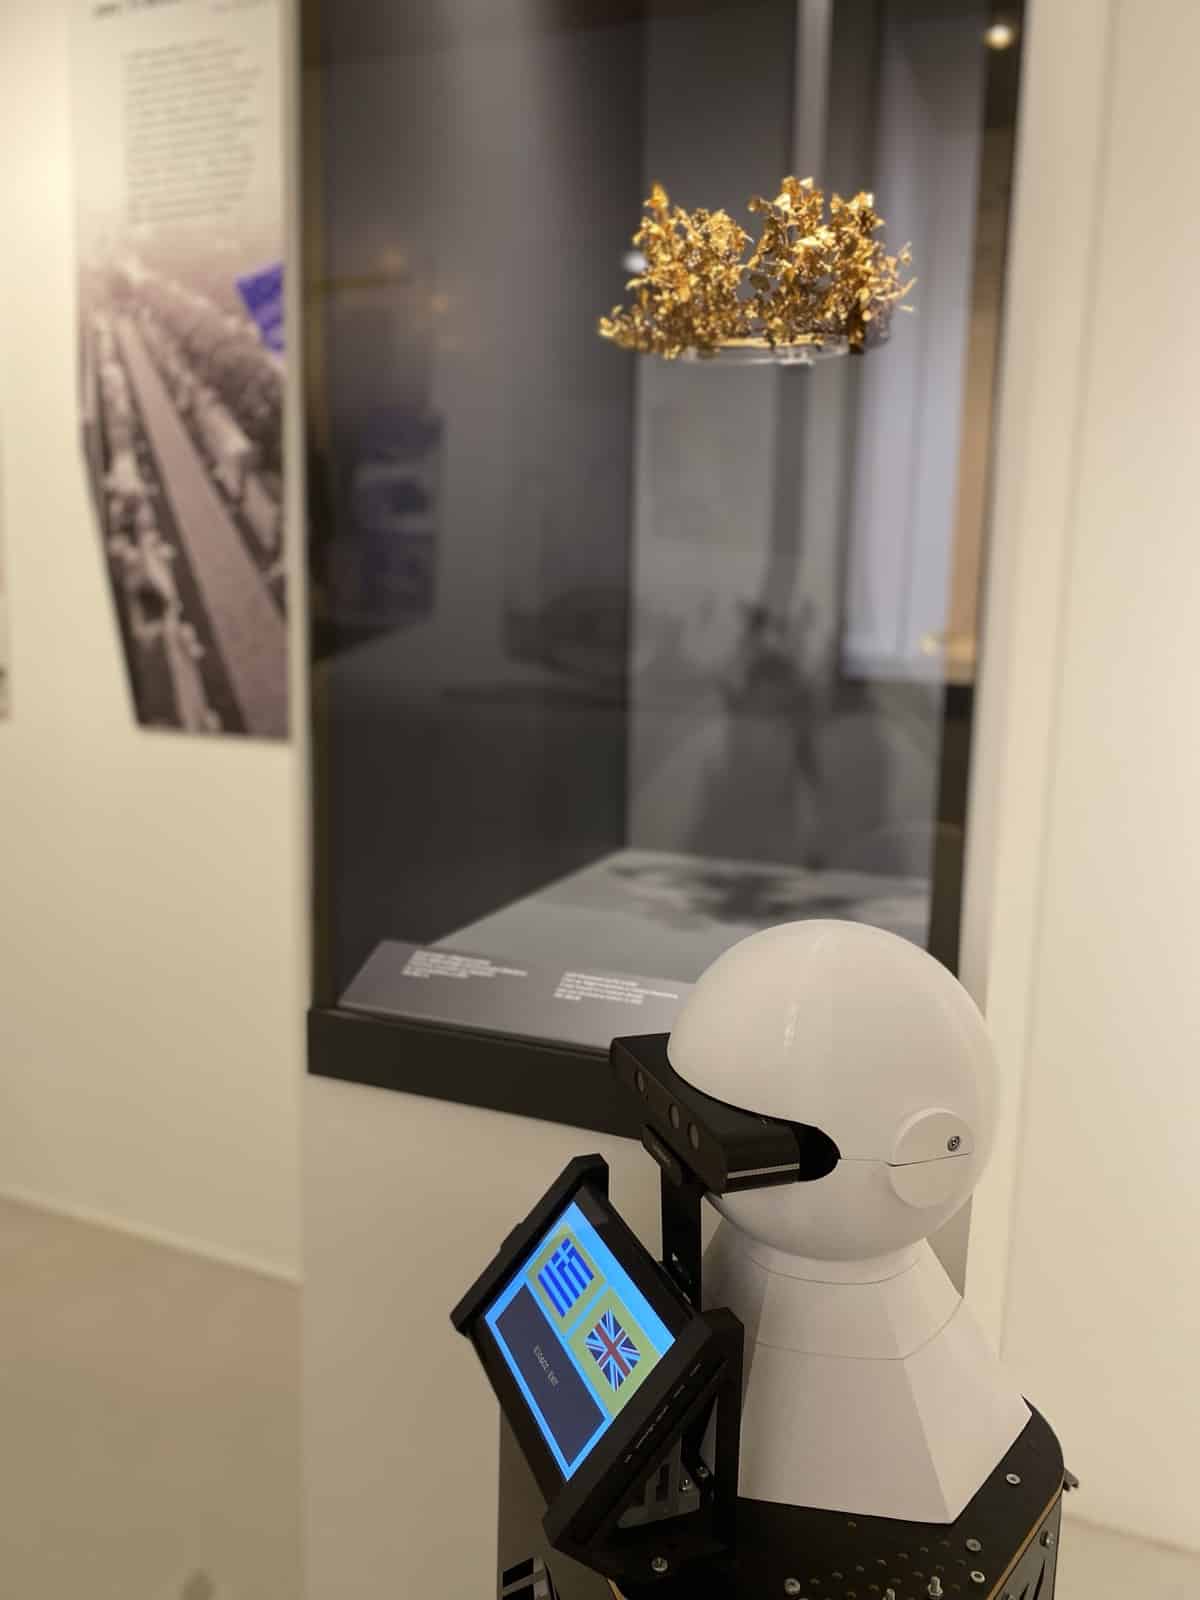 Ρομπότ που θα ενταχθεί στο Αρχαιολογικό Μουσείο Θεσσαλονίκης